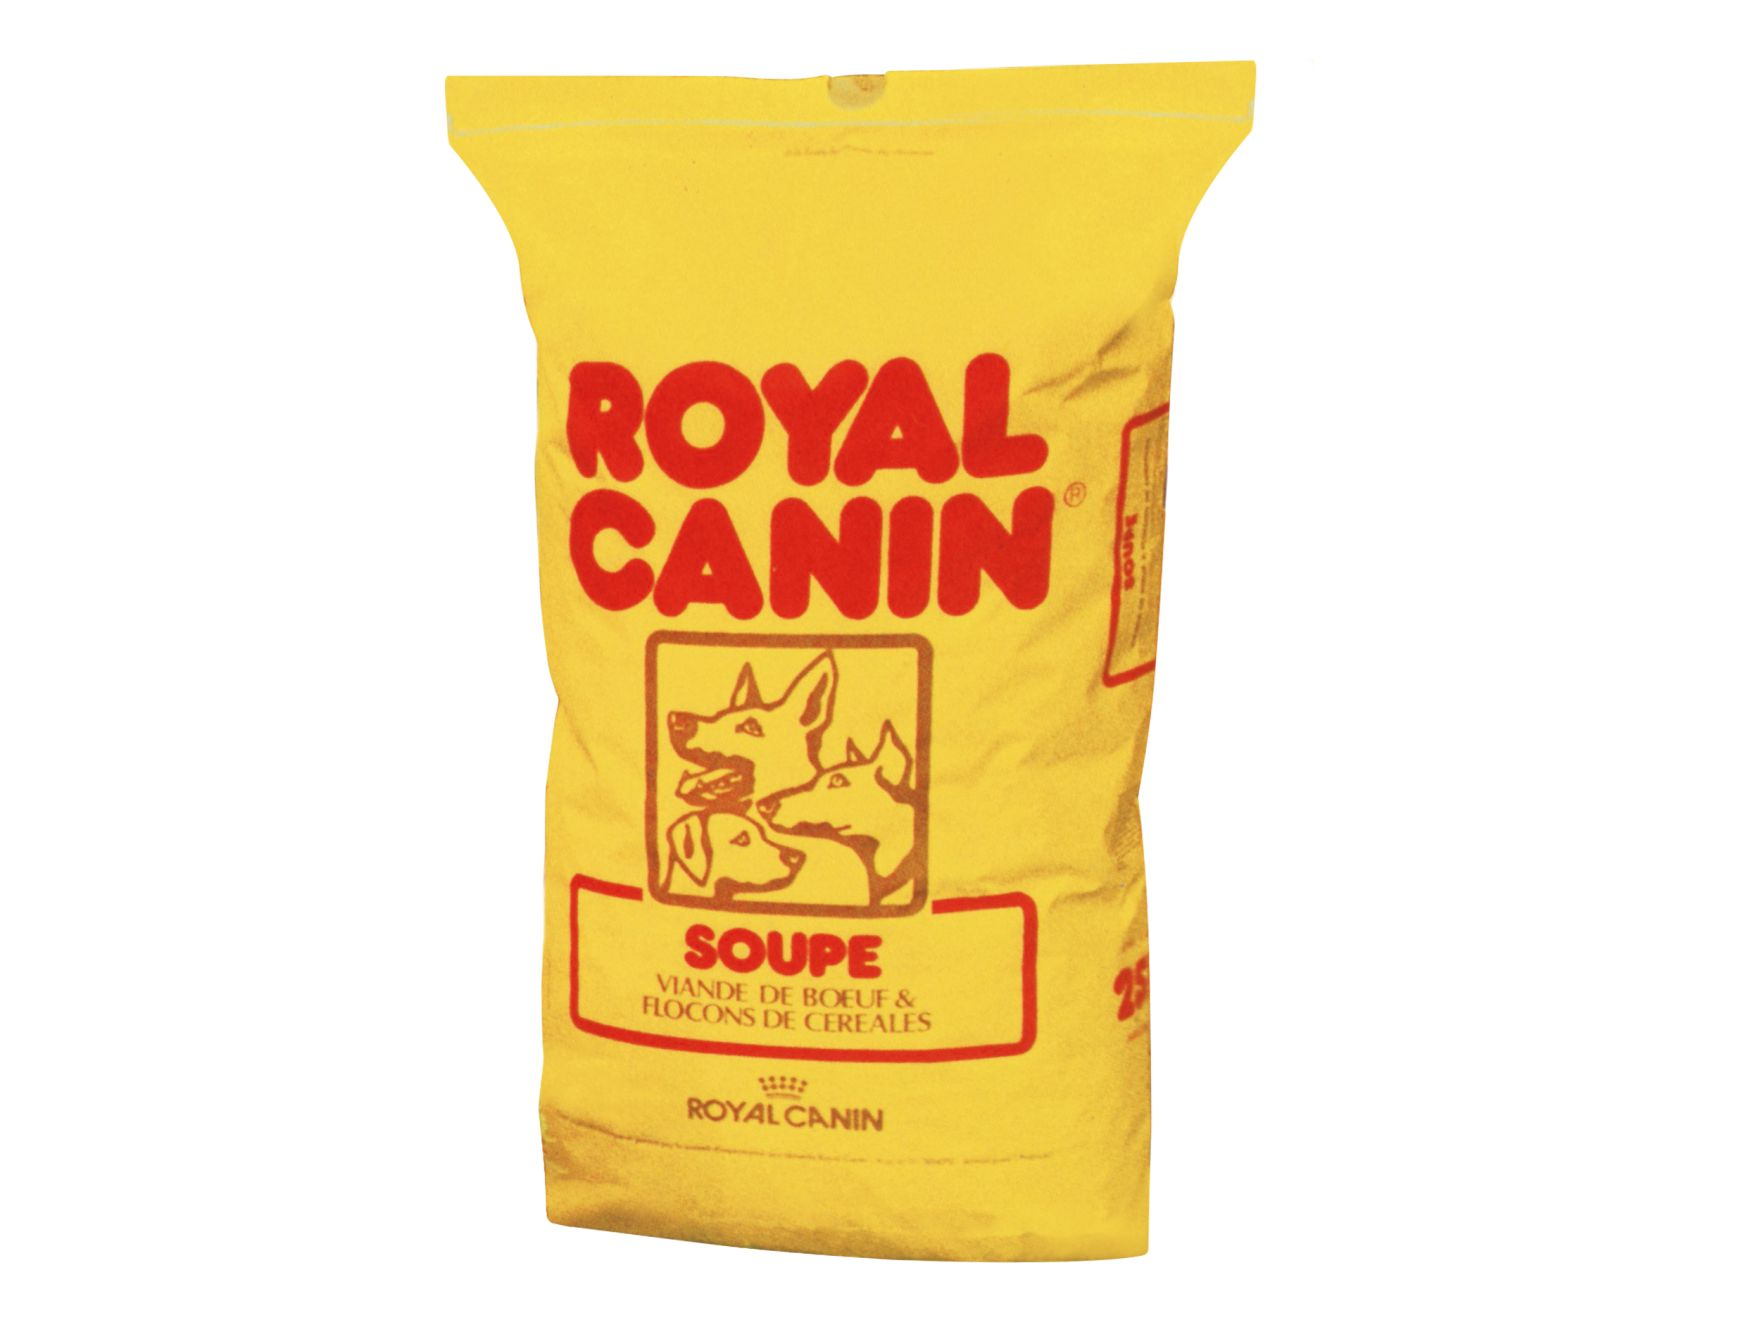 Royal Canin Soupe Jaune product packshot"